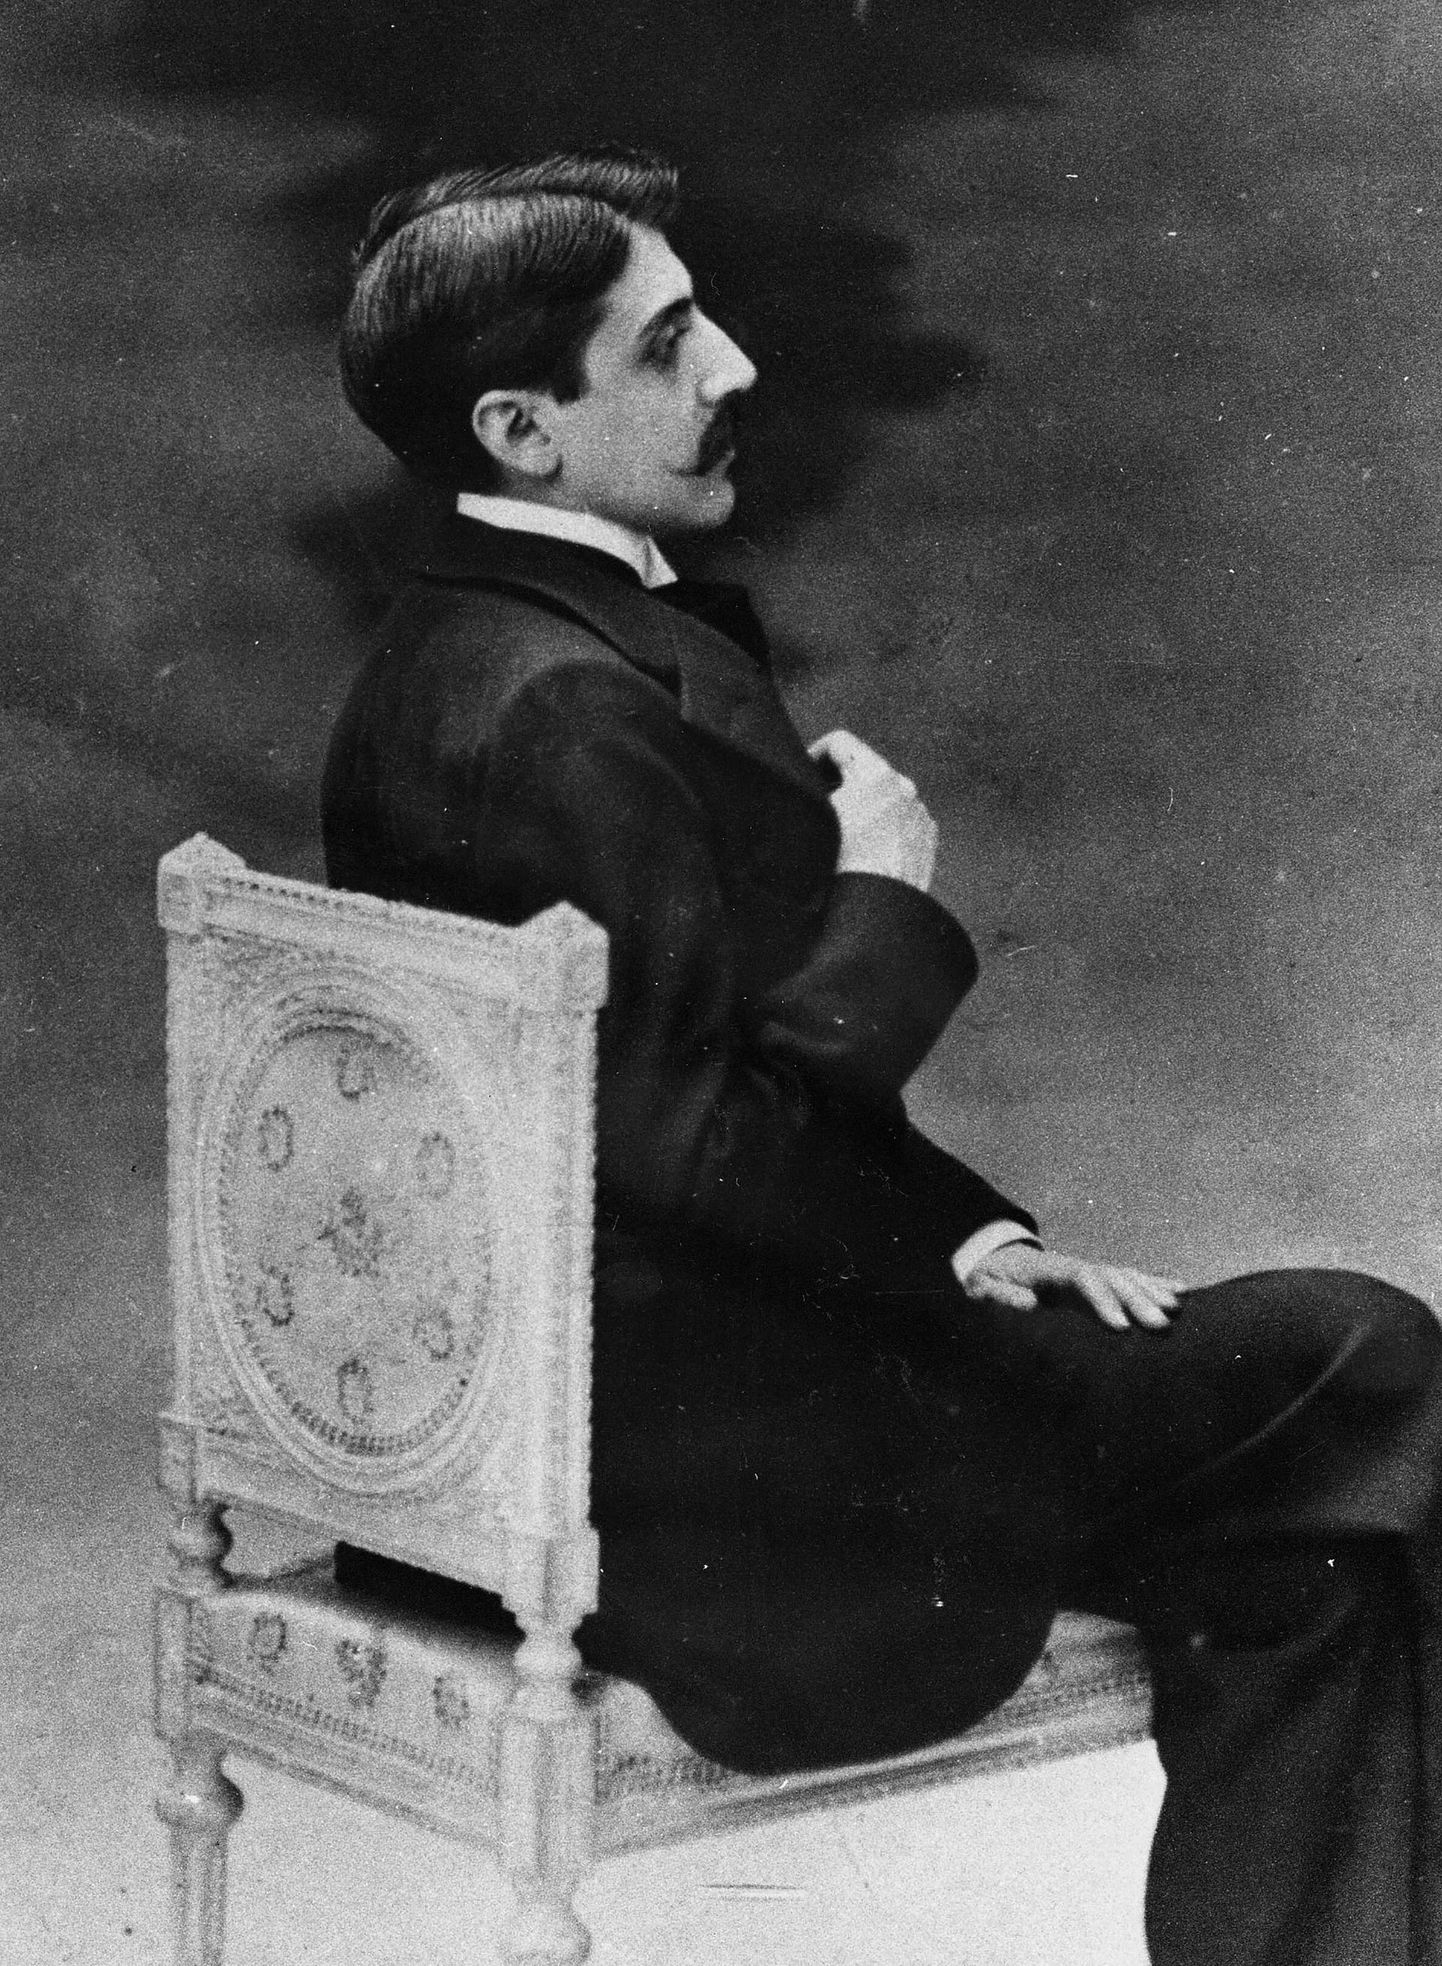 Täna 150 aastat tagasi sündis prantsuse kirjanik Marcel Proust, grafomaanist geenius, monumentaalse jõgiromaani «Kadunud aega otsimas» autor, kelle pikk ja melanhoolne vari laotub siiani üle modernse kirjanduse.